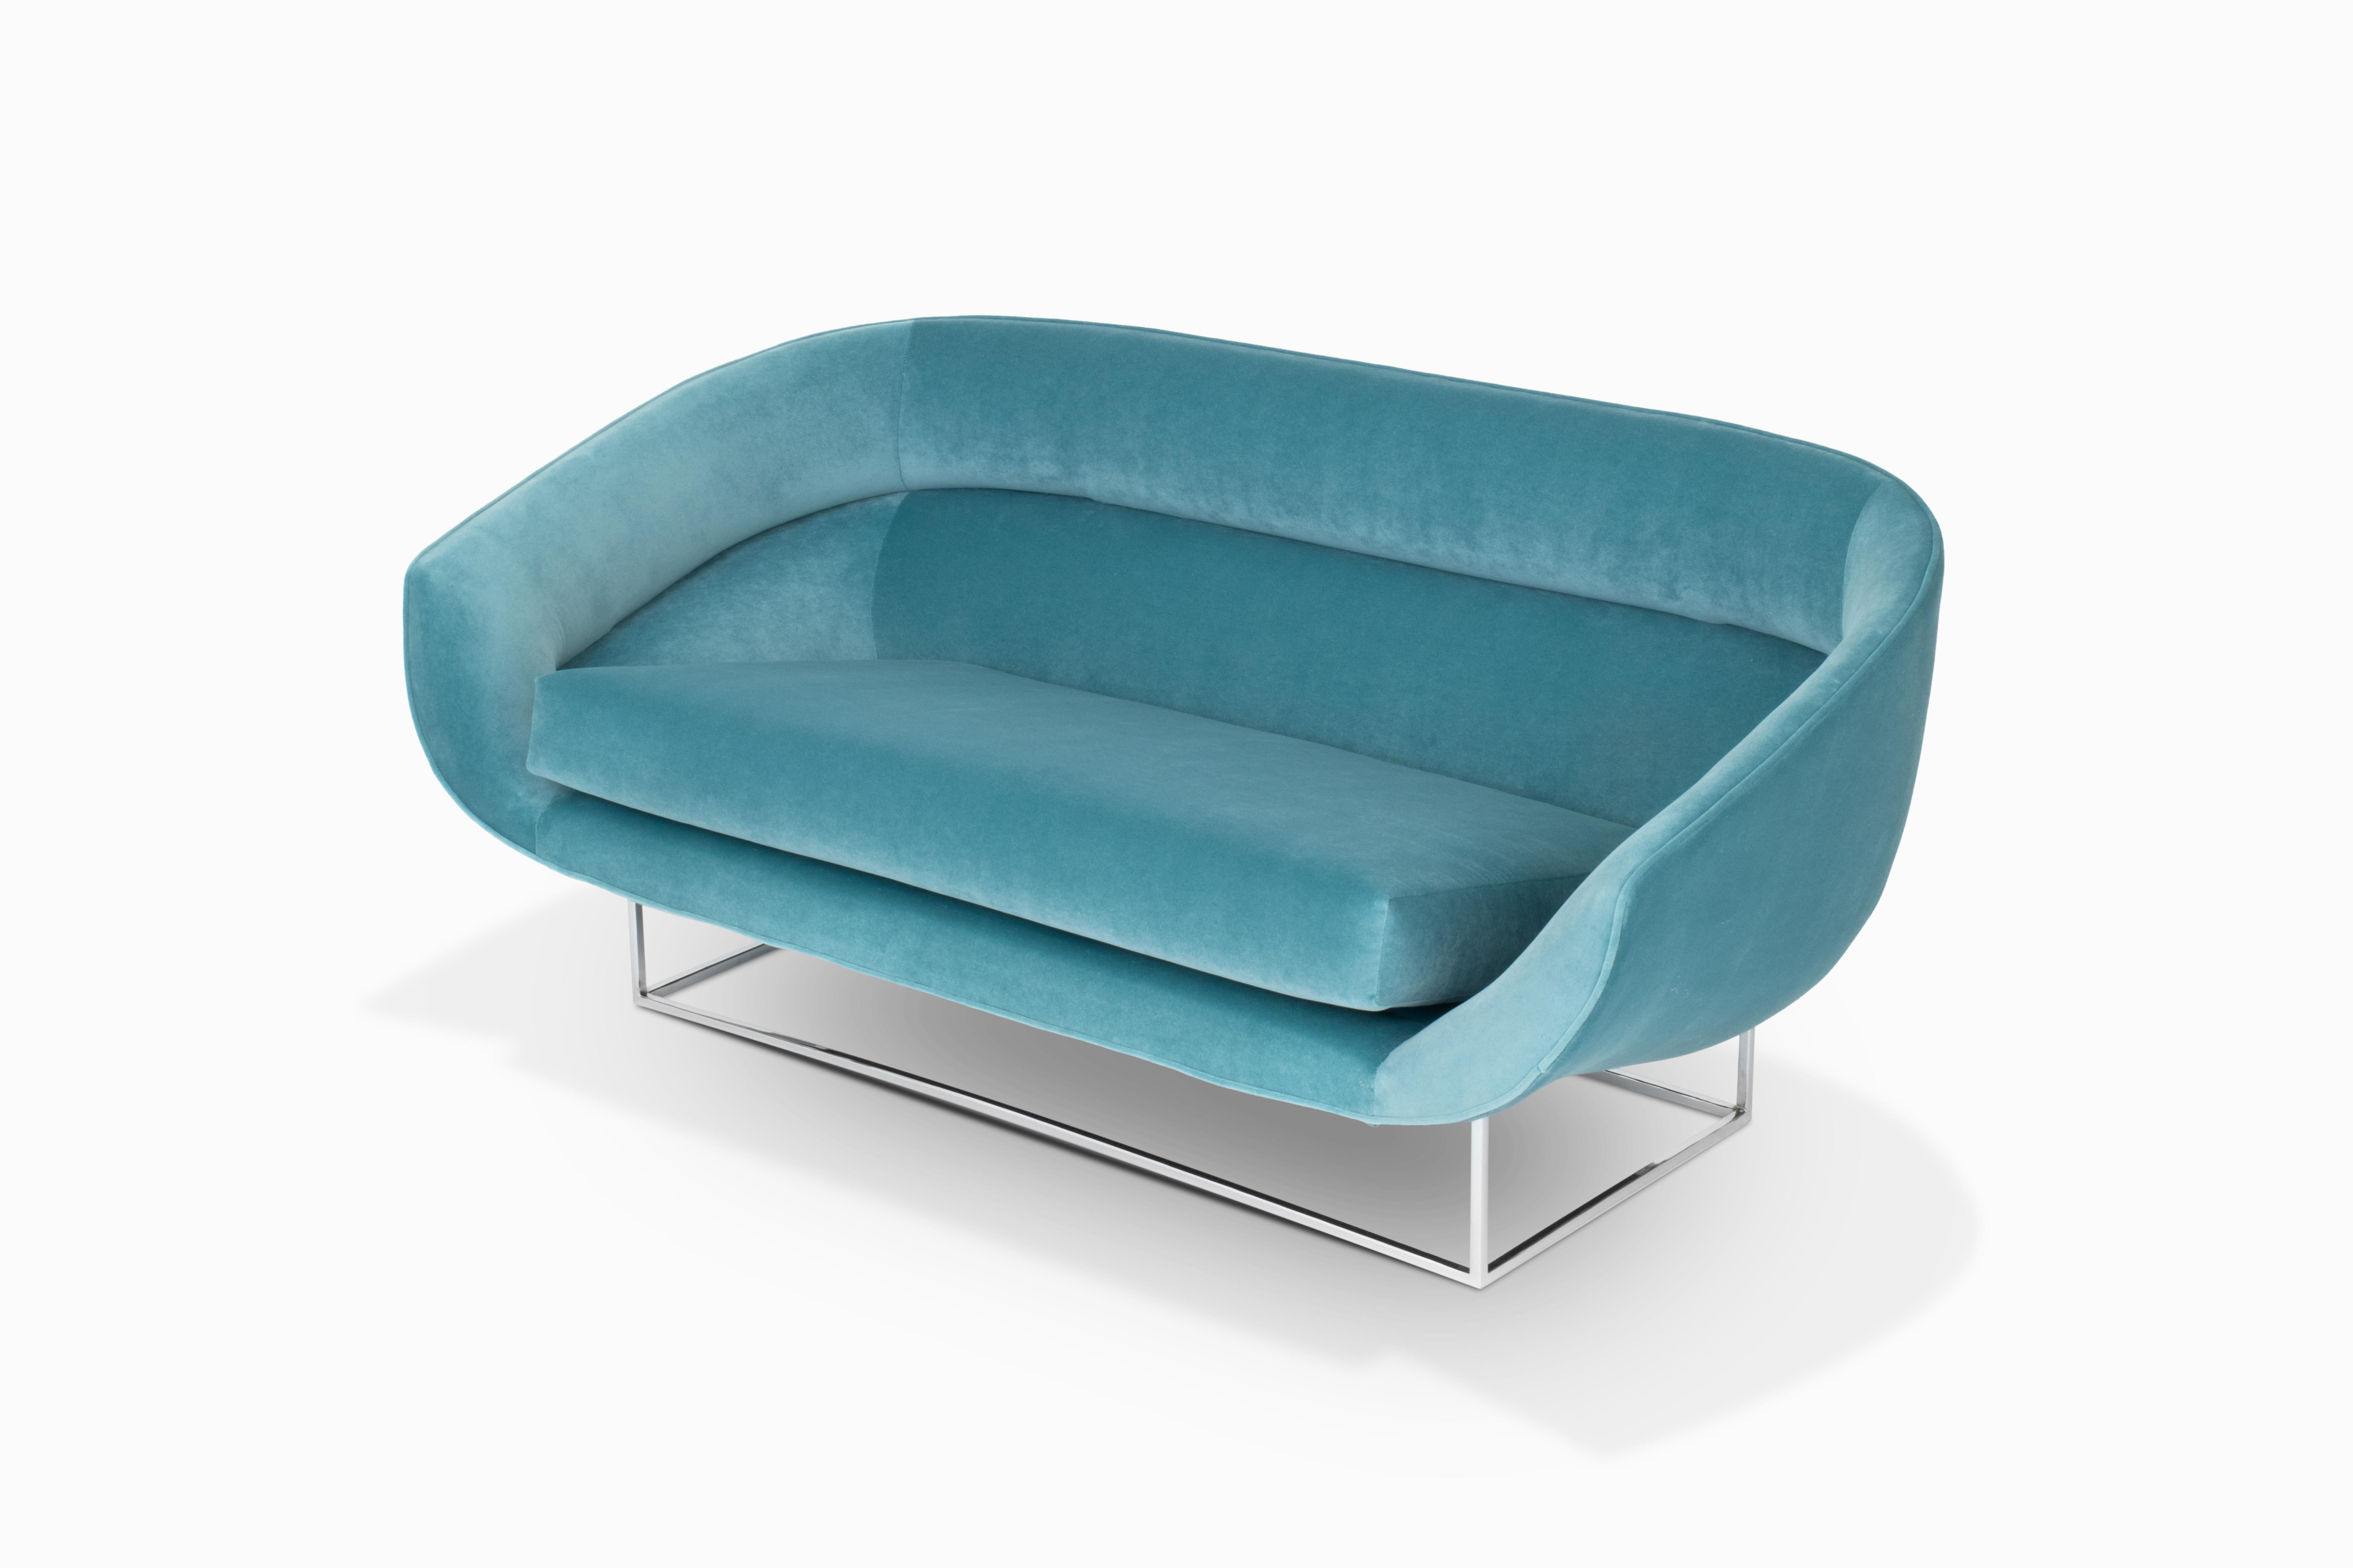 Hier ist ein bemerkenswert schönes schwebendes Sofa von Milo Baughman / Thayer Coggin. Die geschwungene Sitzschale wurde mit luxuriösem türkisblauem Samt neu gepolstert. Und er steht auf einem neu verchromten Metallsockel. Dies ist ein